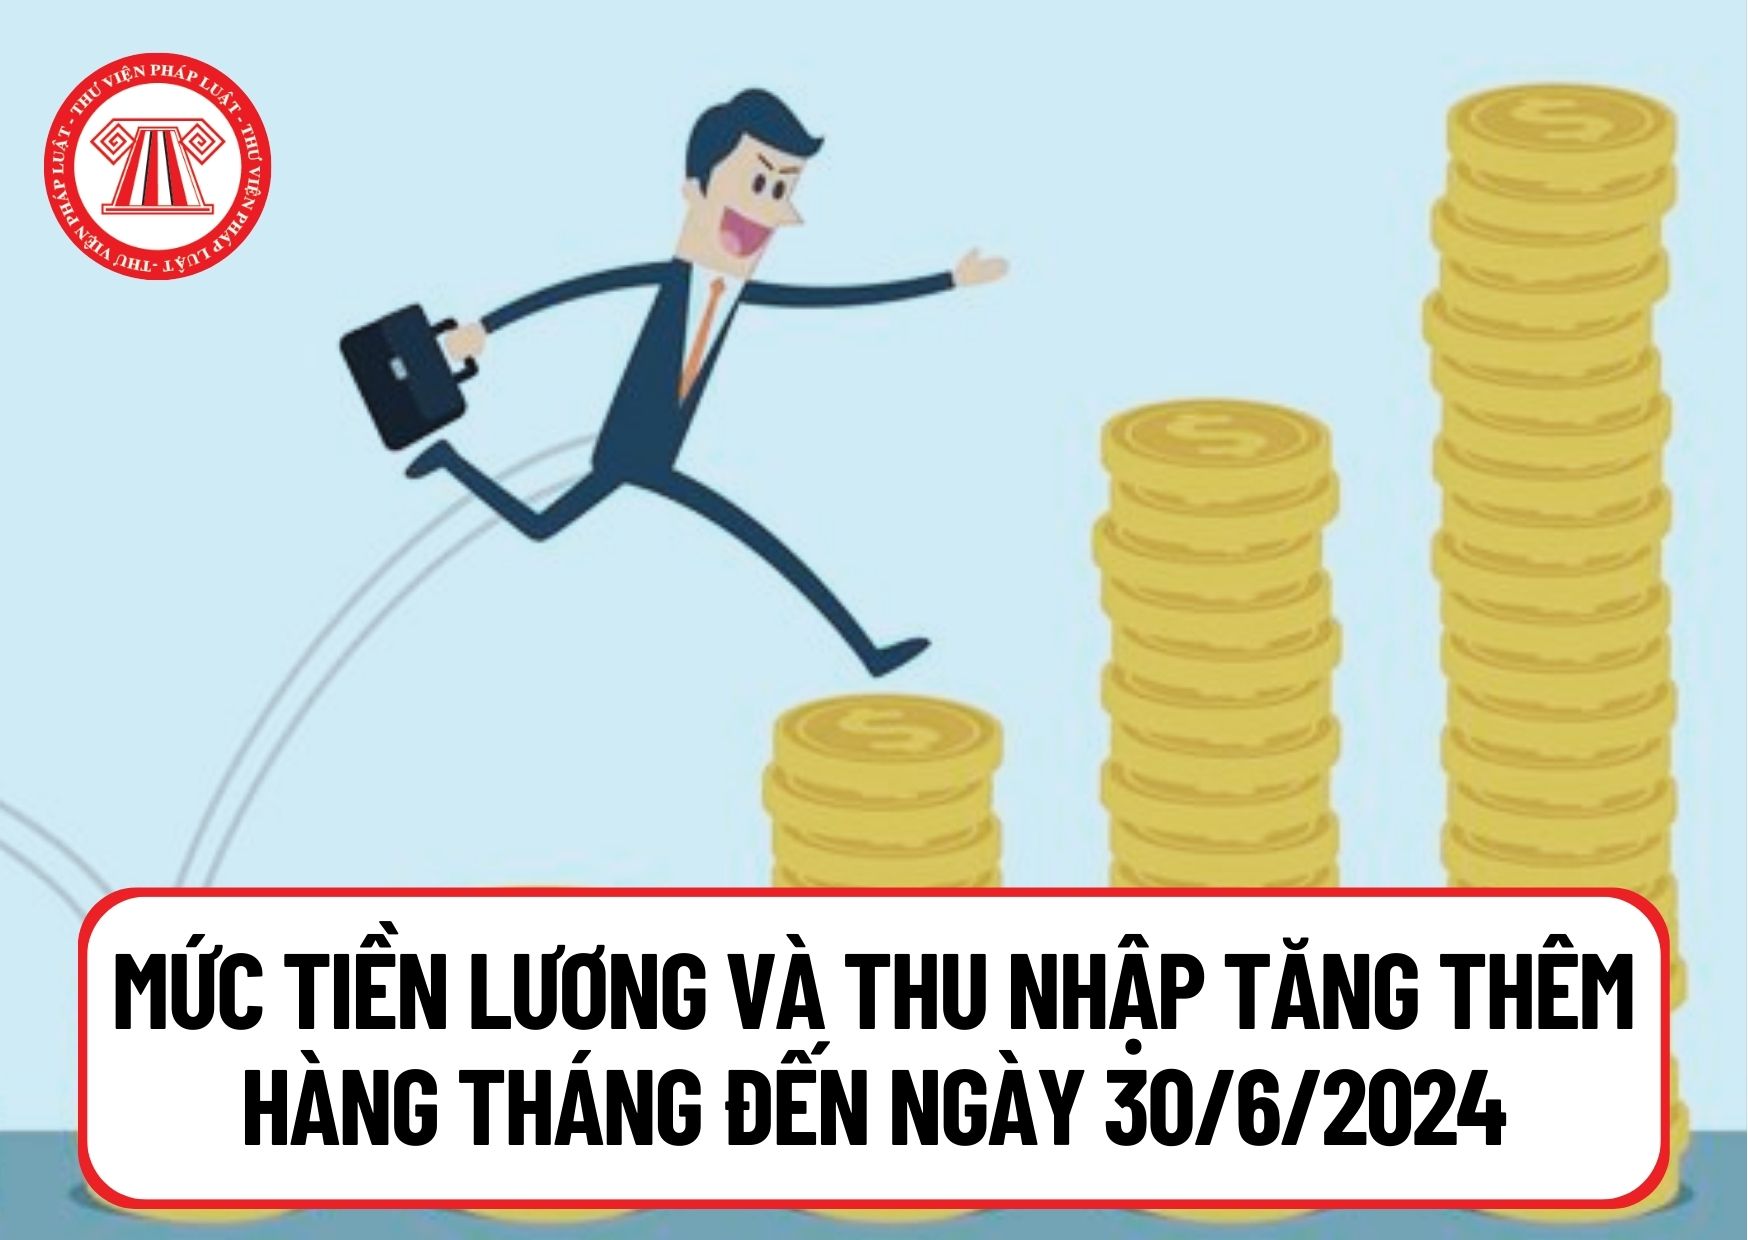 Đến ngày 30/6/2024, mức tiền lương và thu nhập tăng thêm hàng tháng đối với đơn vị hành chính nhà nước tính như thế nào?